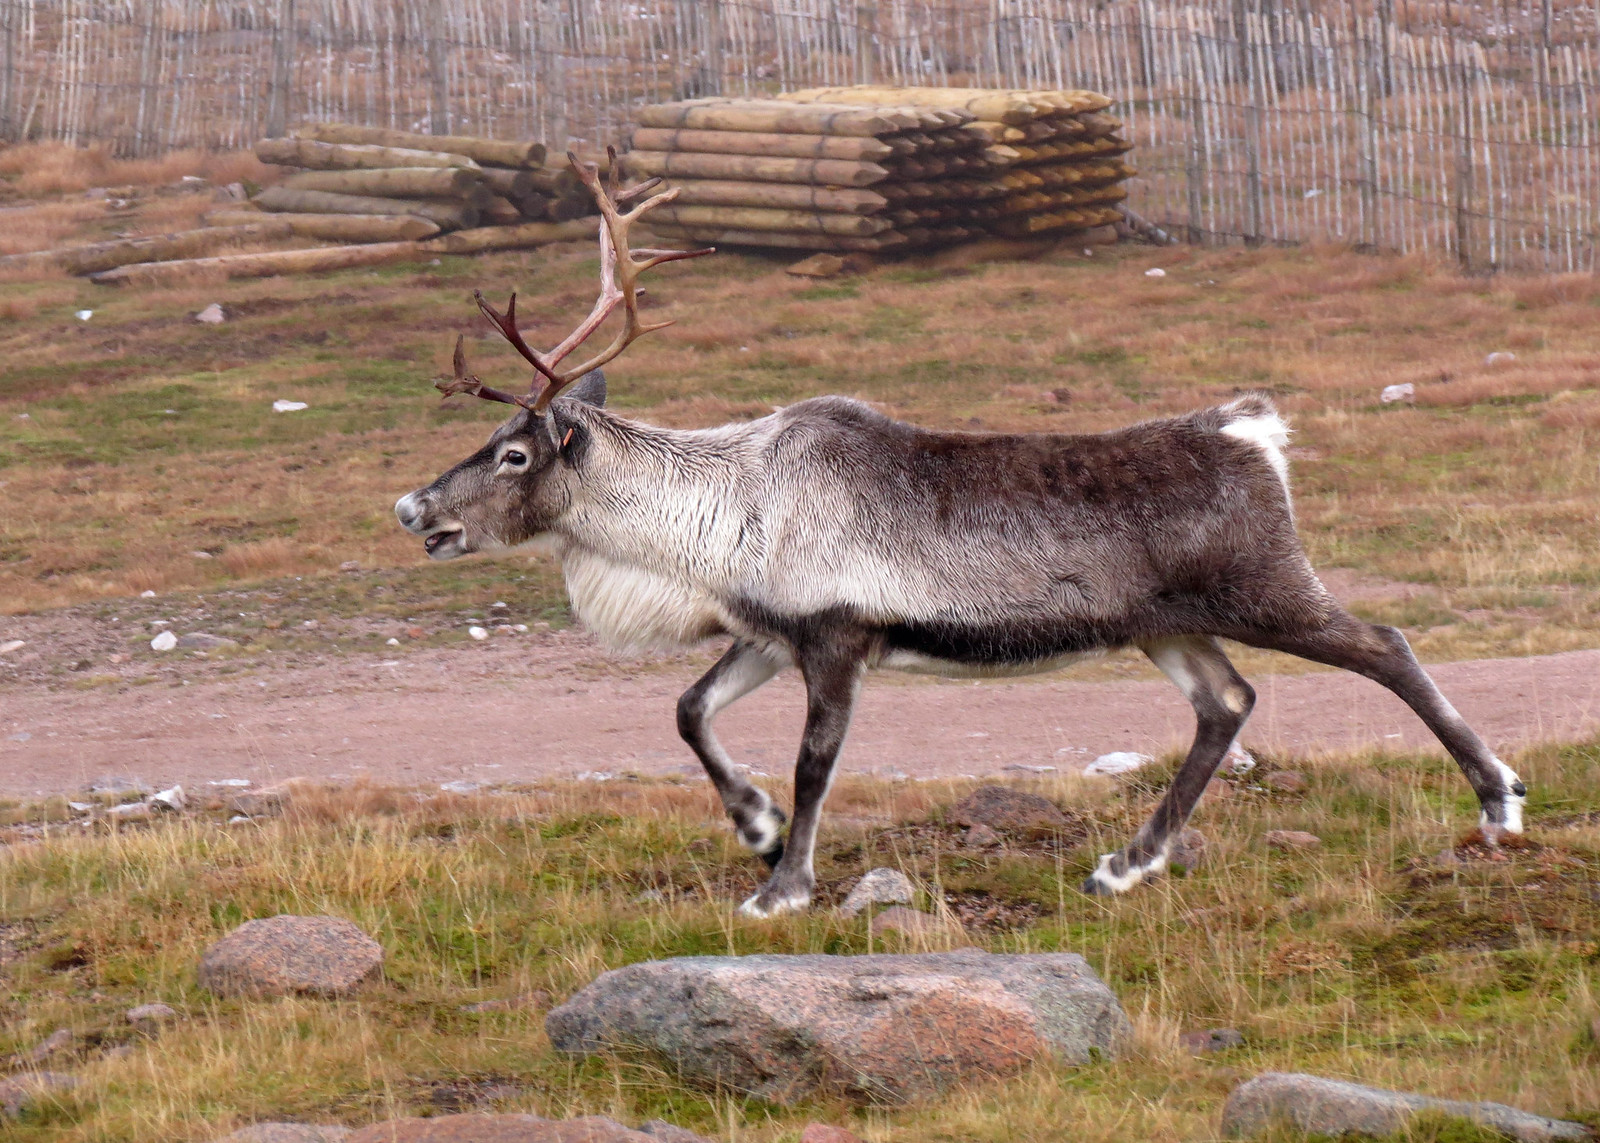 Reindeer - Rangifer tarandus